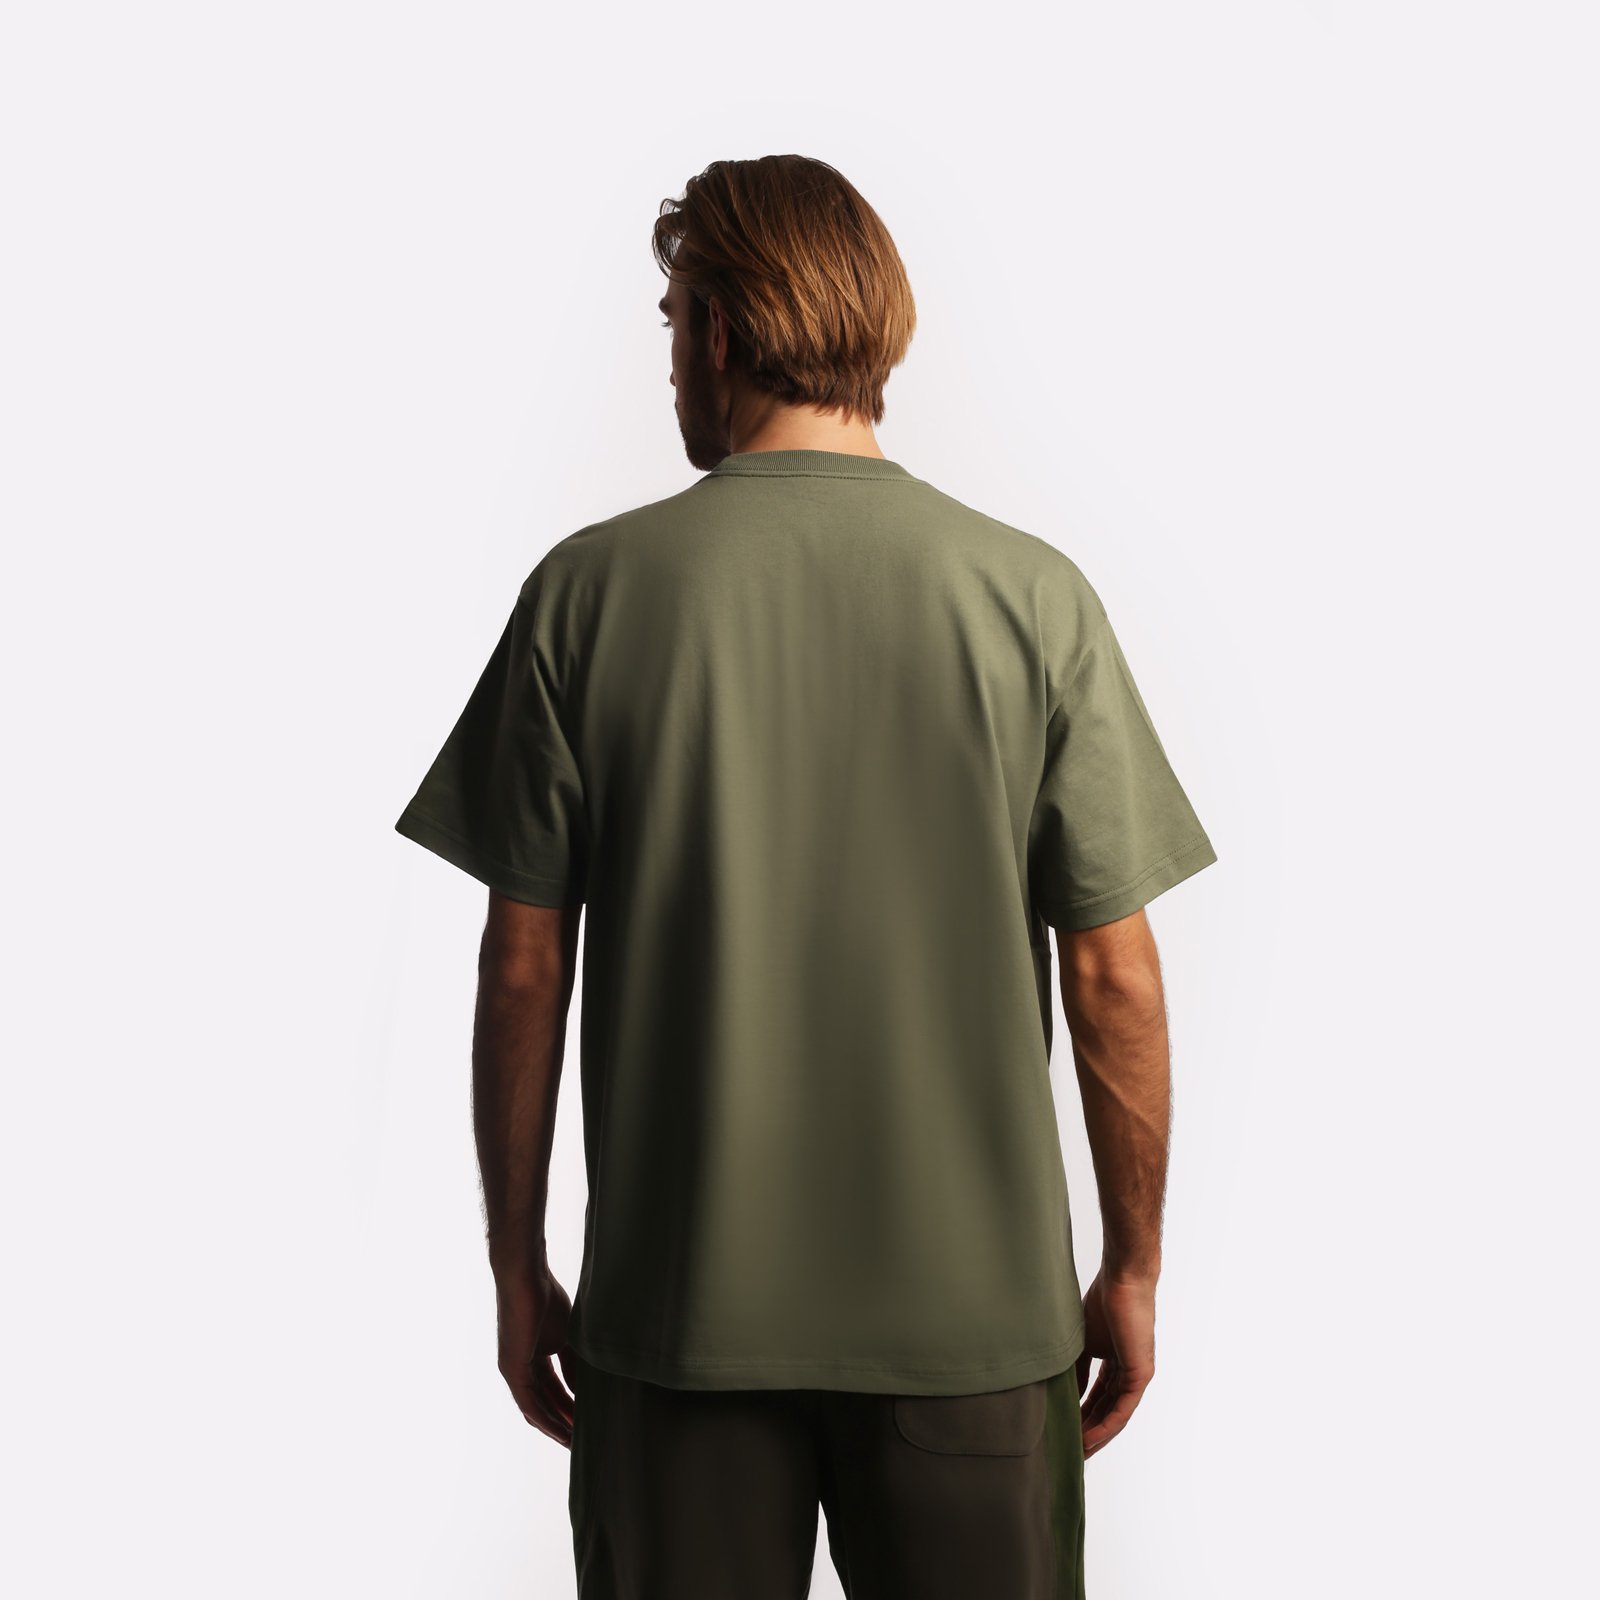 мужская зеленая футболка Carhartt WIP S/S Warm Embrace T-Shirt I032390-green - цена, описание, фото 2